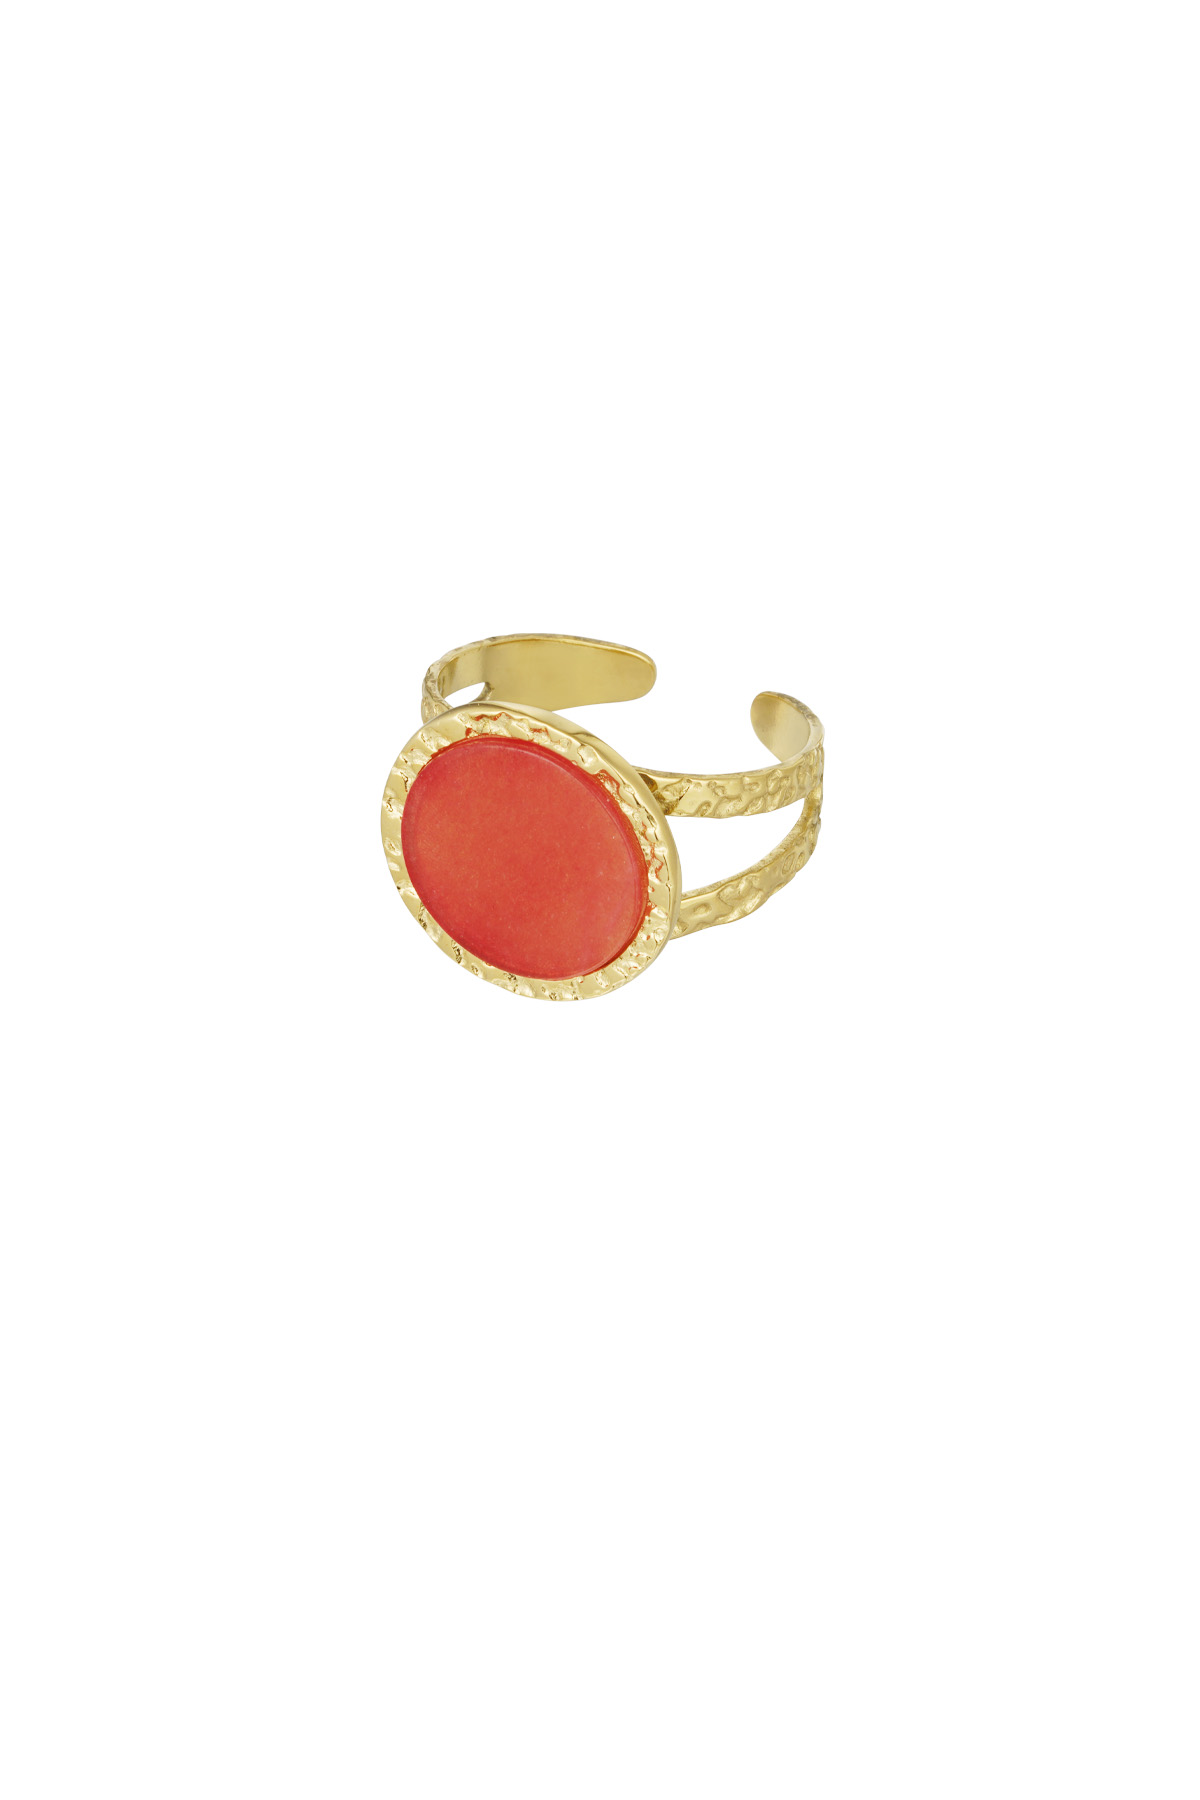 Statement ring vintage look - rood goud